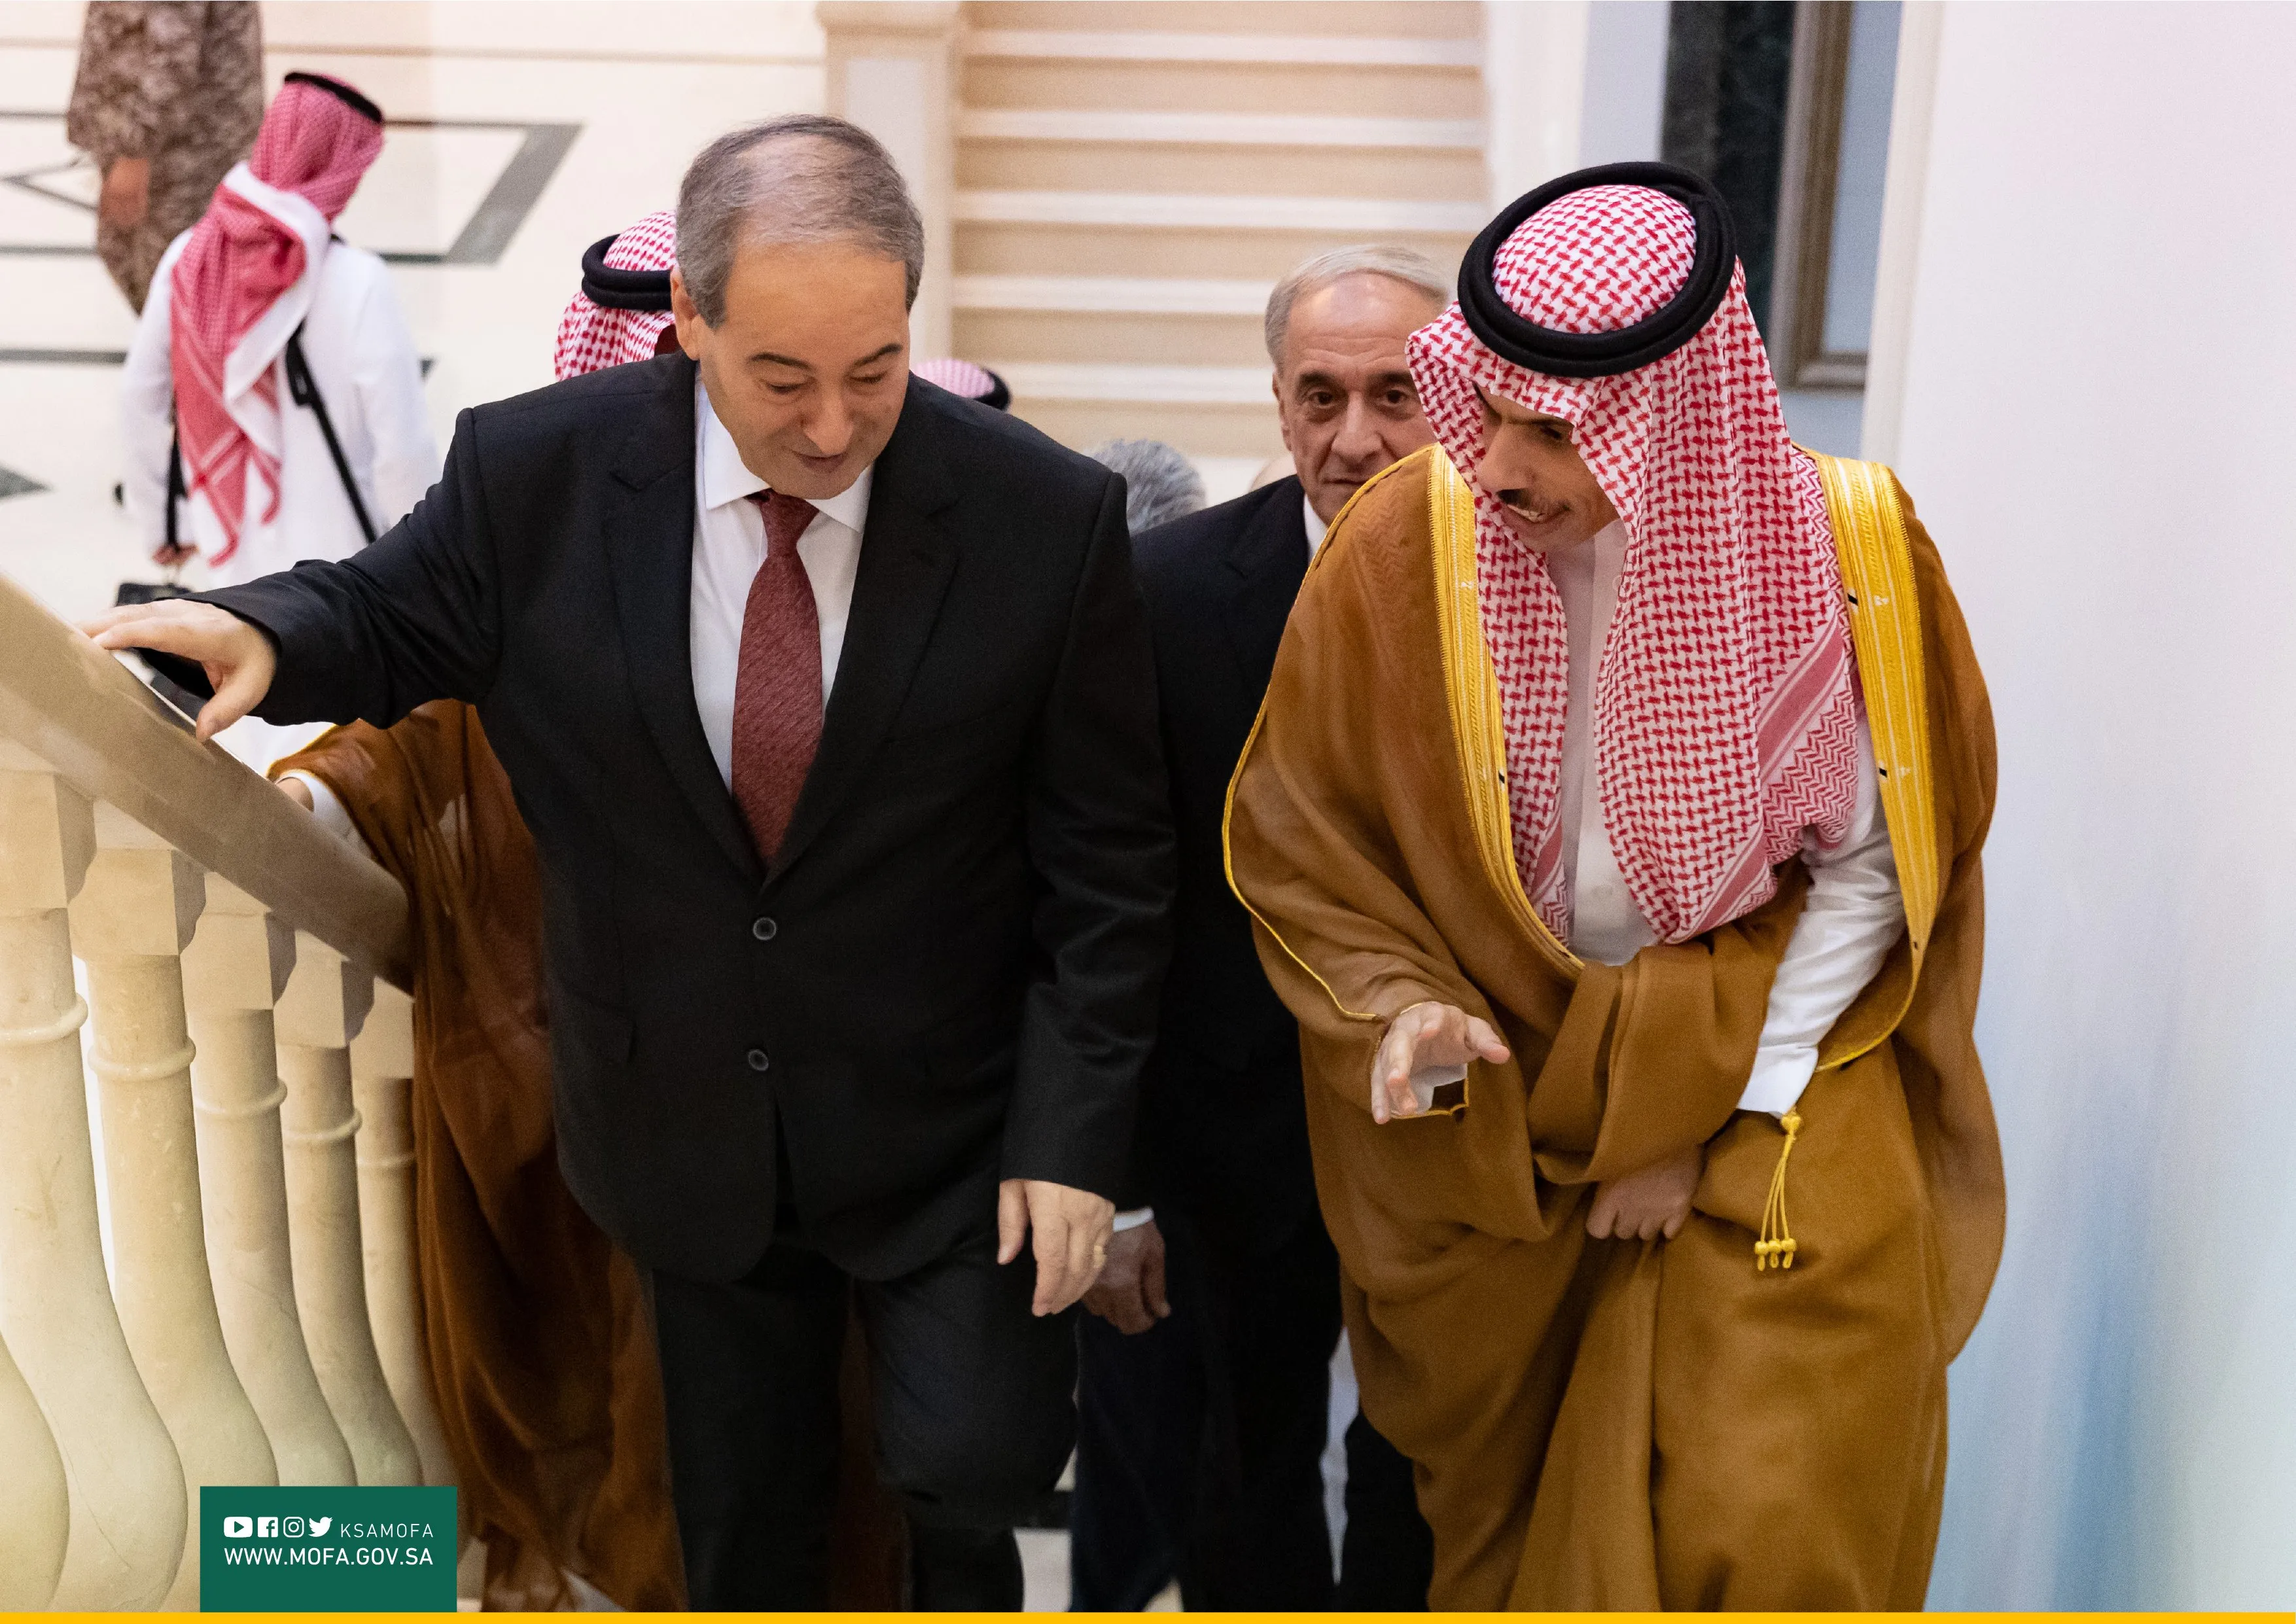 "الائتلاف" يدعو "السعودية" لمراجعة خطواتها مع نظام الأسد والثبات على المواقف المشرفة للمملكة